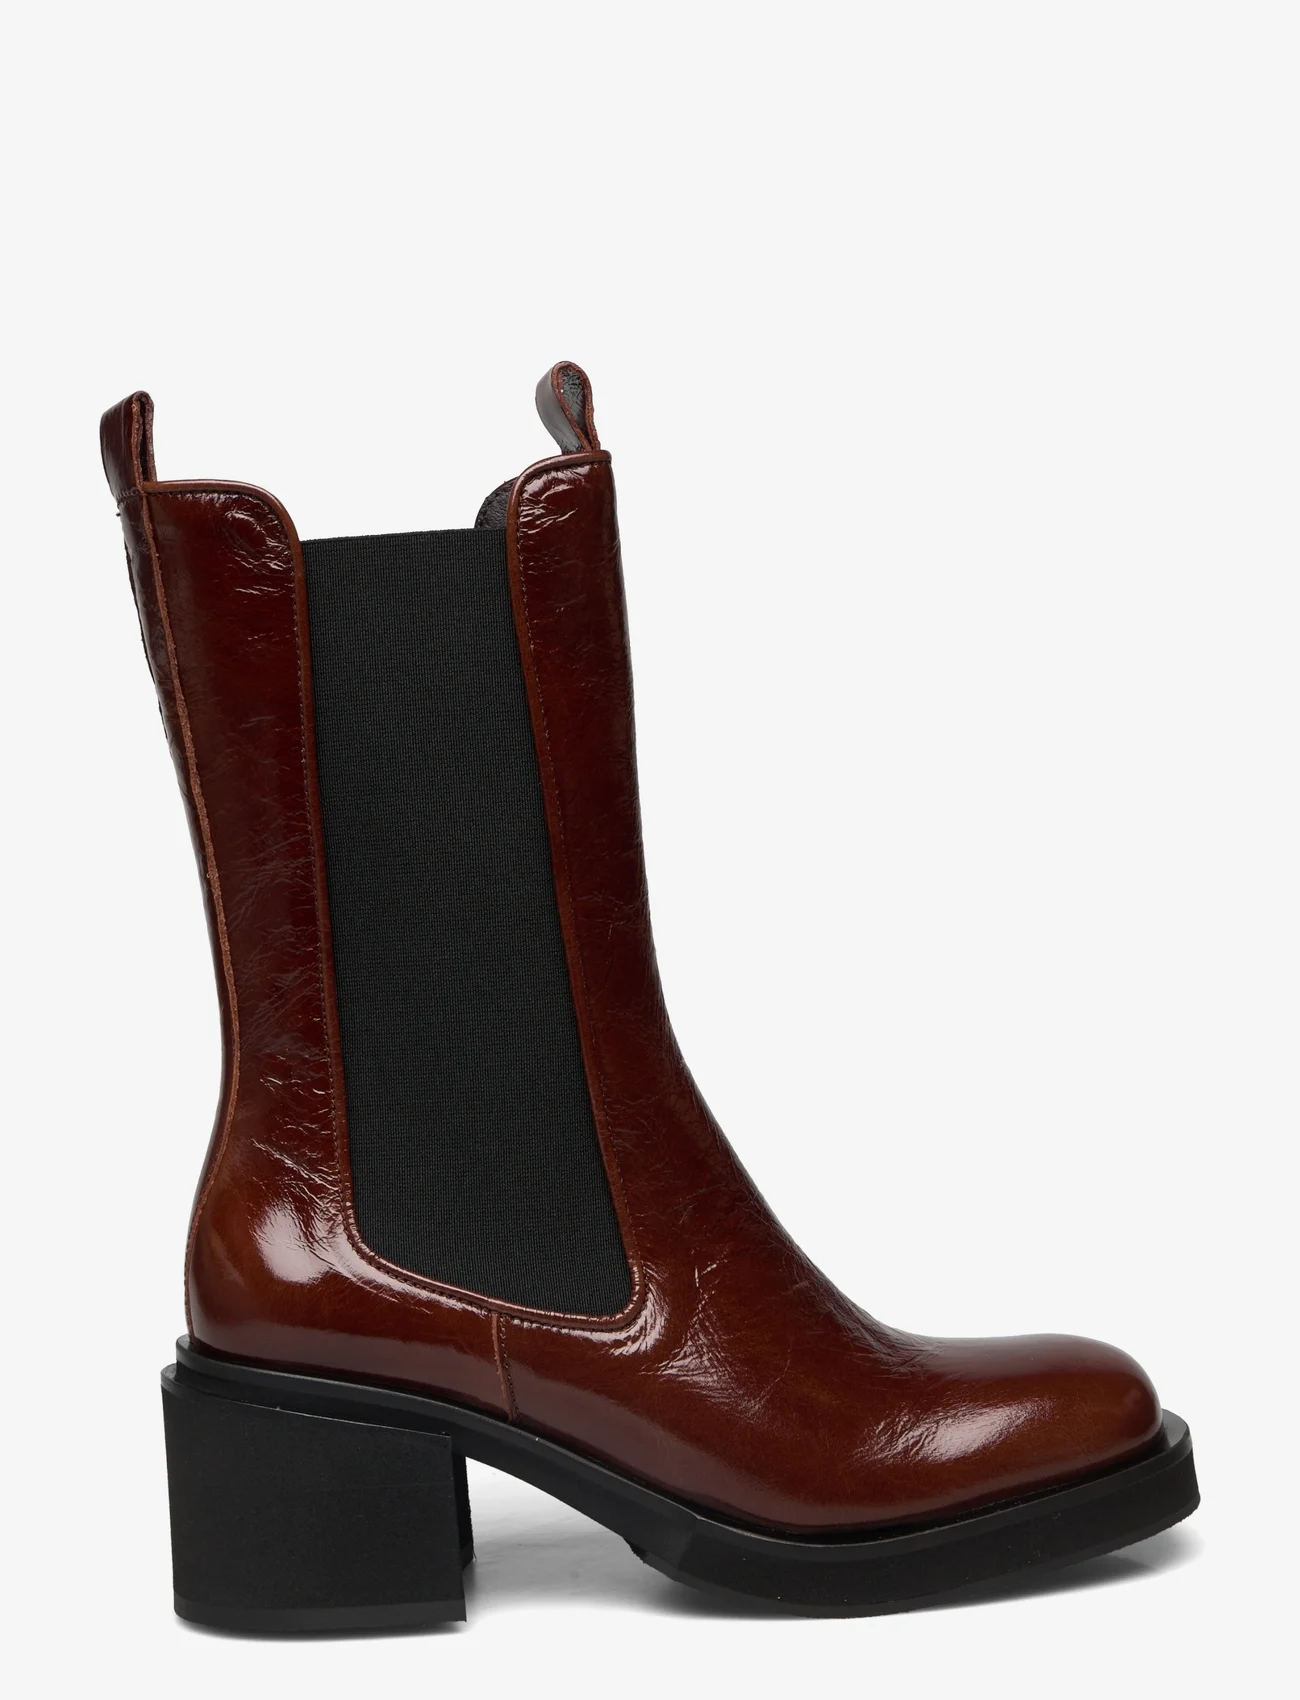 Billi Bi - Boots - high heel - castagna naplack - 1